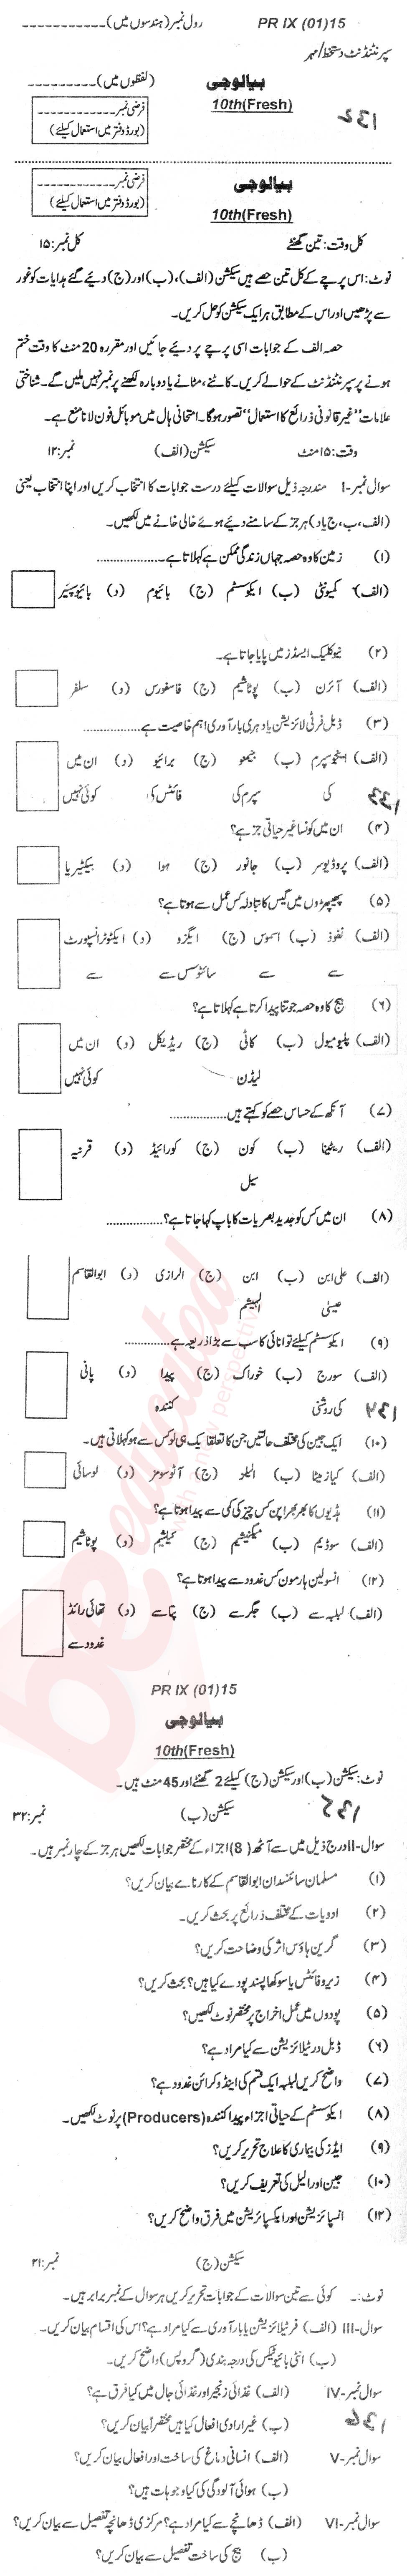 Biology 10th Urdu Medium Past Paper Group 1 BISE Peshawar 2015